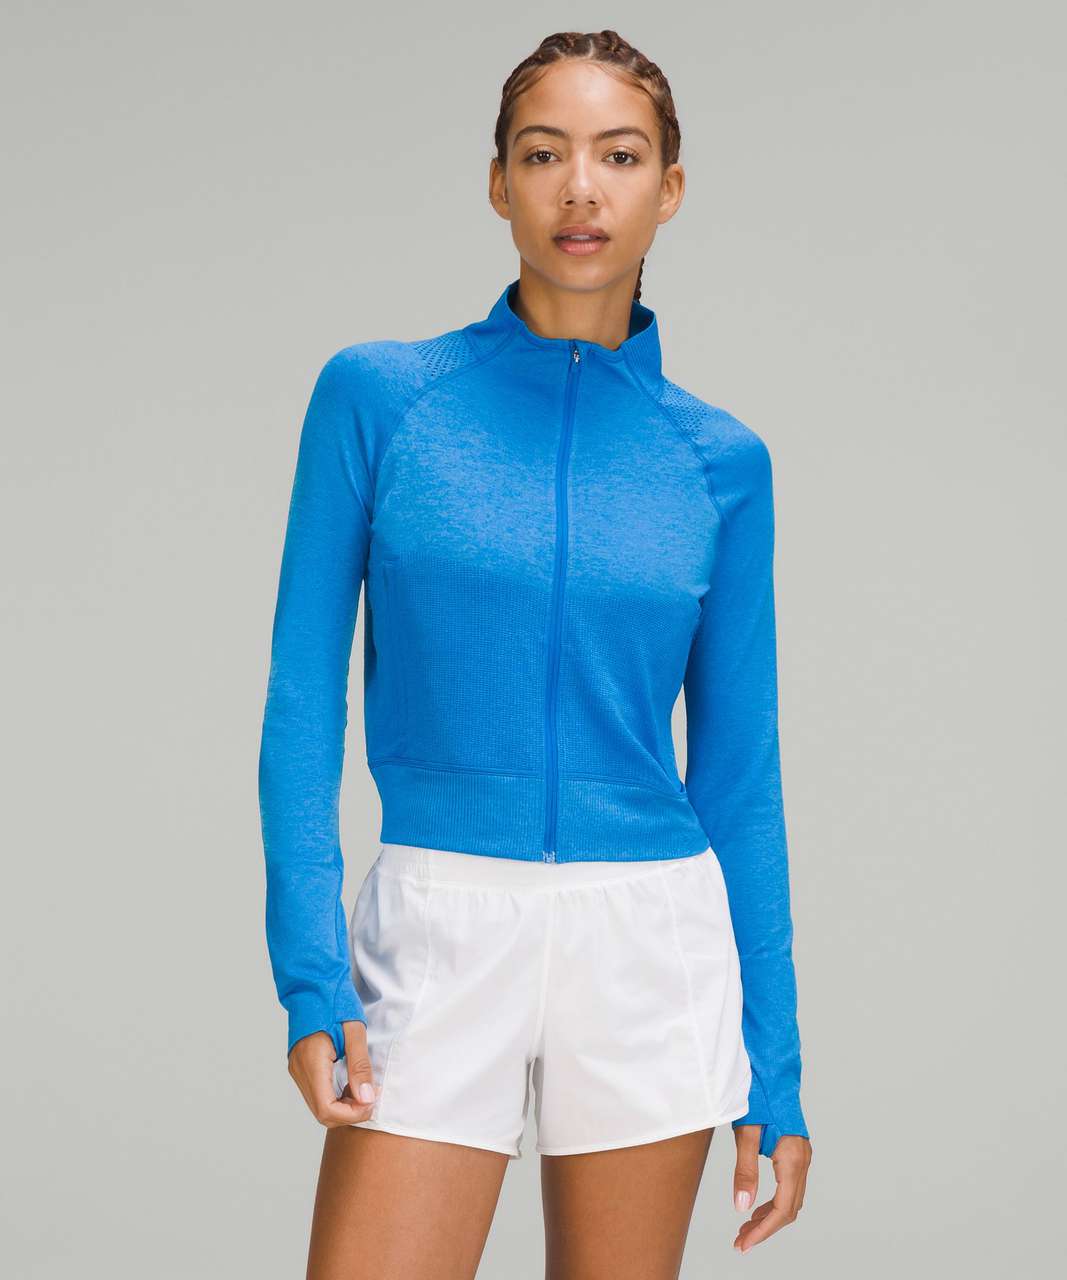 Lululemon Breathable Textured Knit Training Jacket - Poolside / Aero Blue